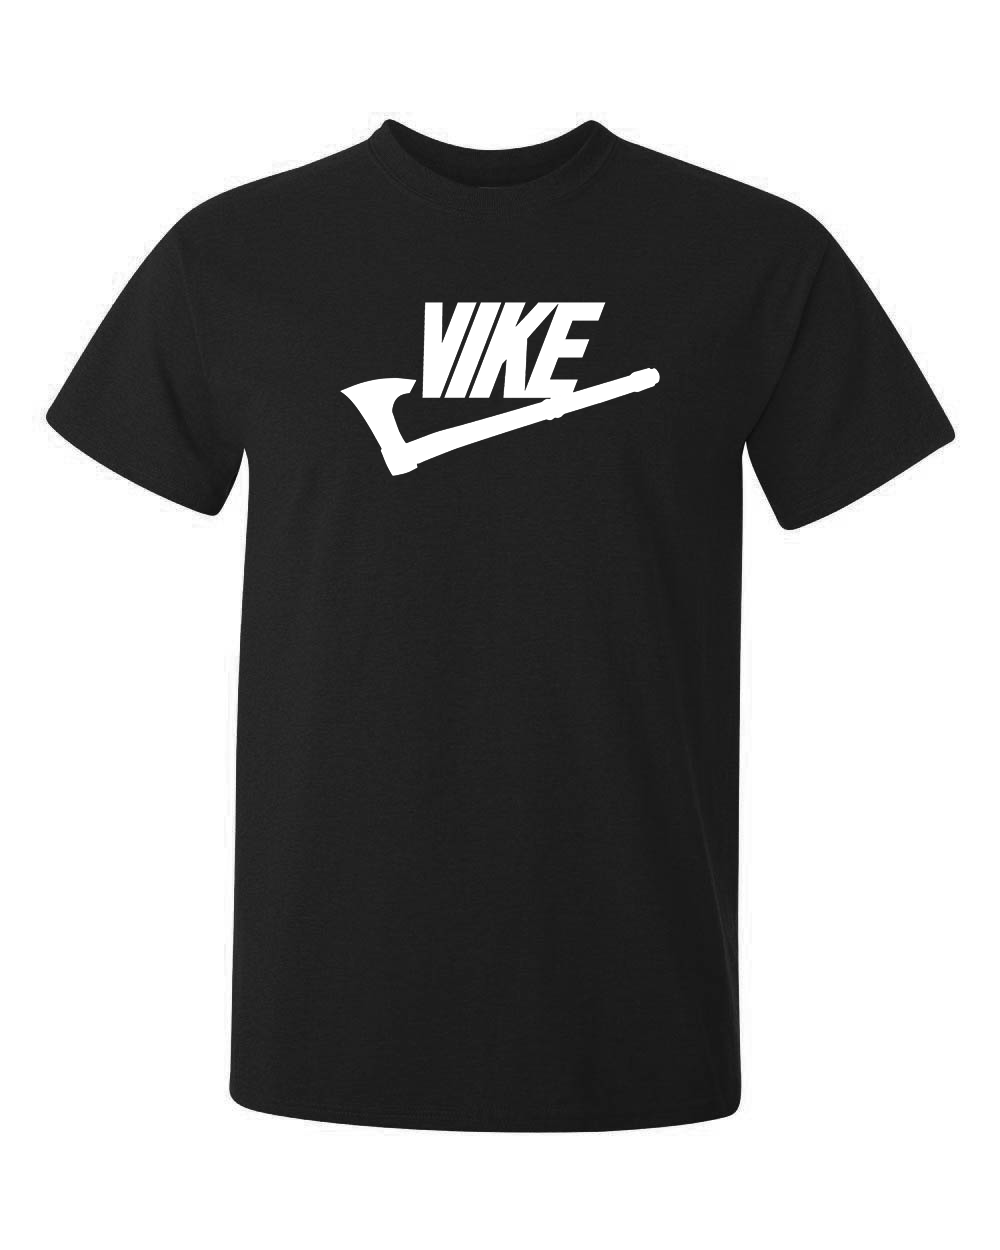 kända märket Nike i en kombination med viking blir coolare och tuffare alltså Vike, tryckt på svart t-shirt